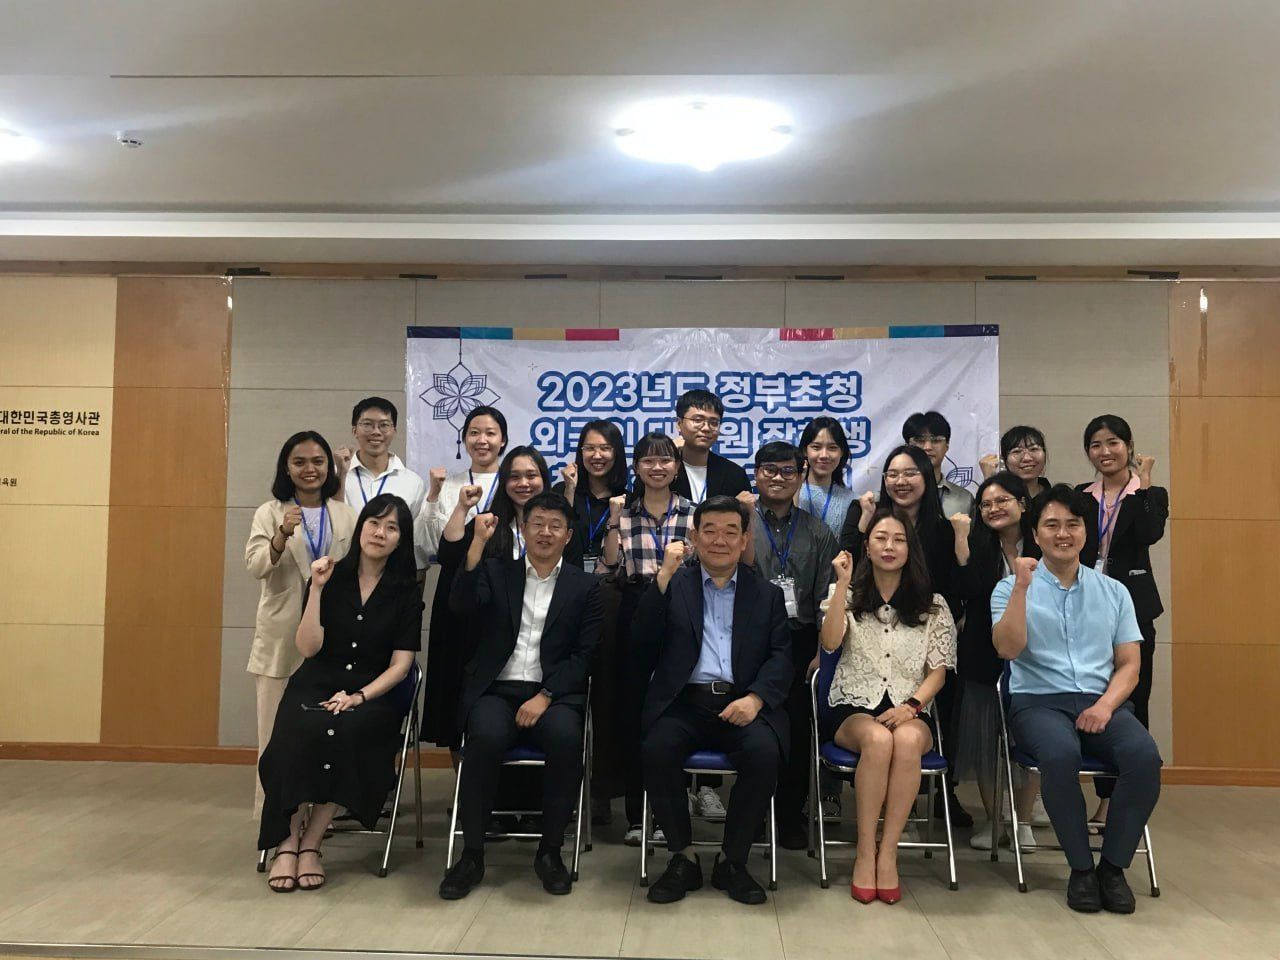 Trung Tâm Ngôn Ngữ tiếng Hàn tại TP. Hồ Chí Minh mở rộng phạm vi hoạt động giáo dục tiếng Hàn - 3